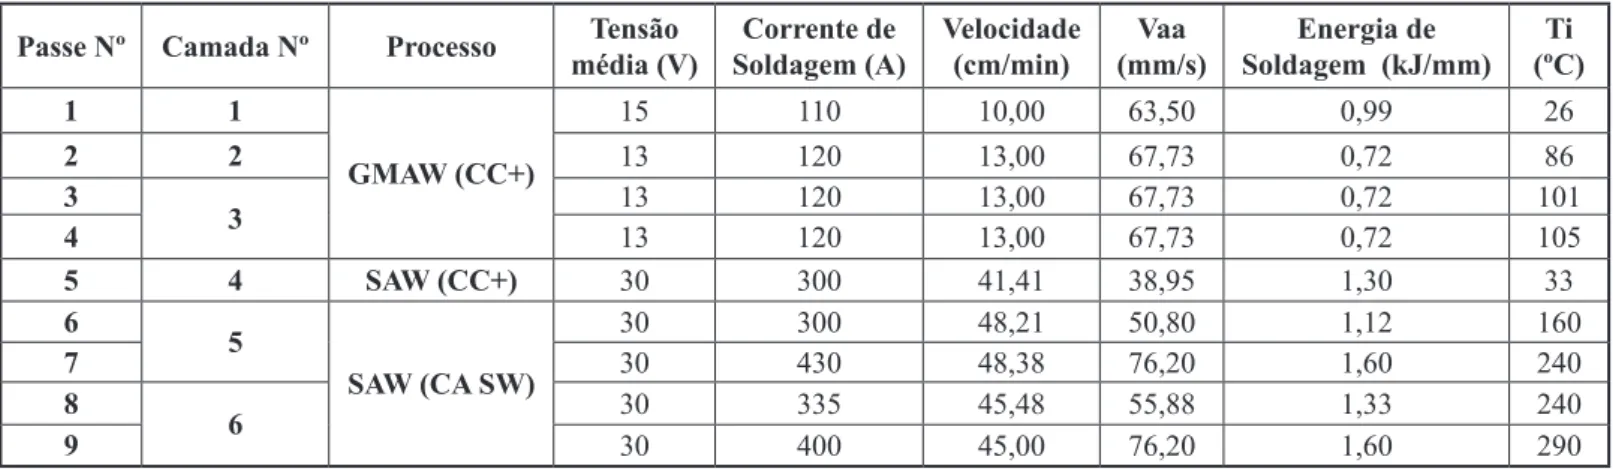 Tabela 3. Valores da frequência, off-set e balanço de onda empregados, assim como a taxa de deposição para cada passe.